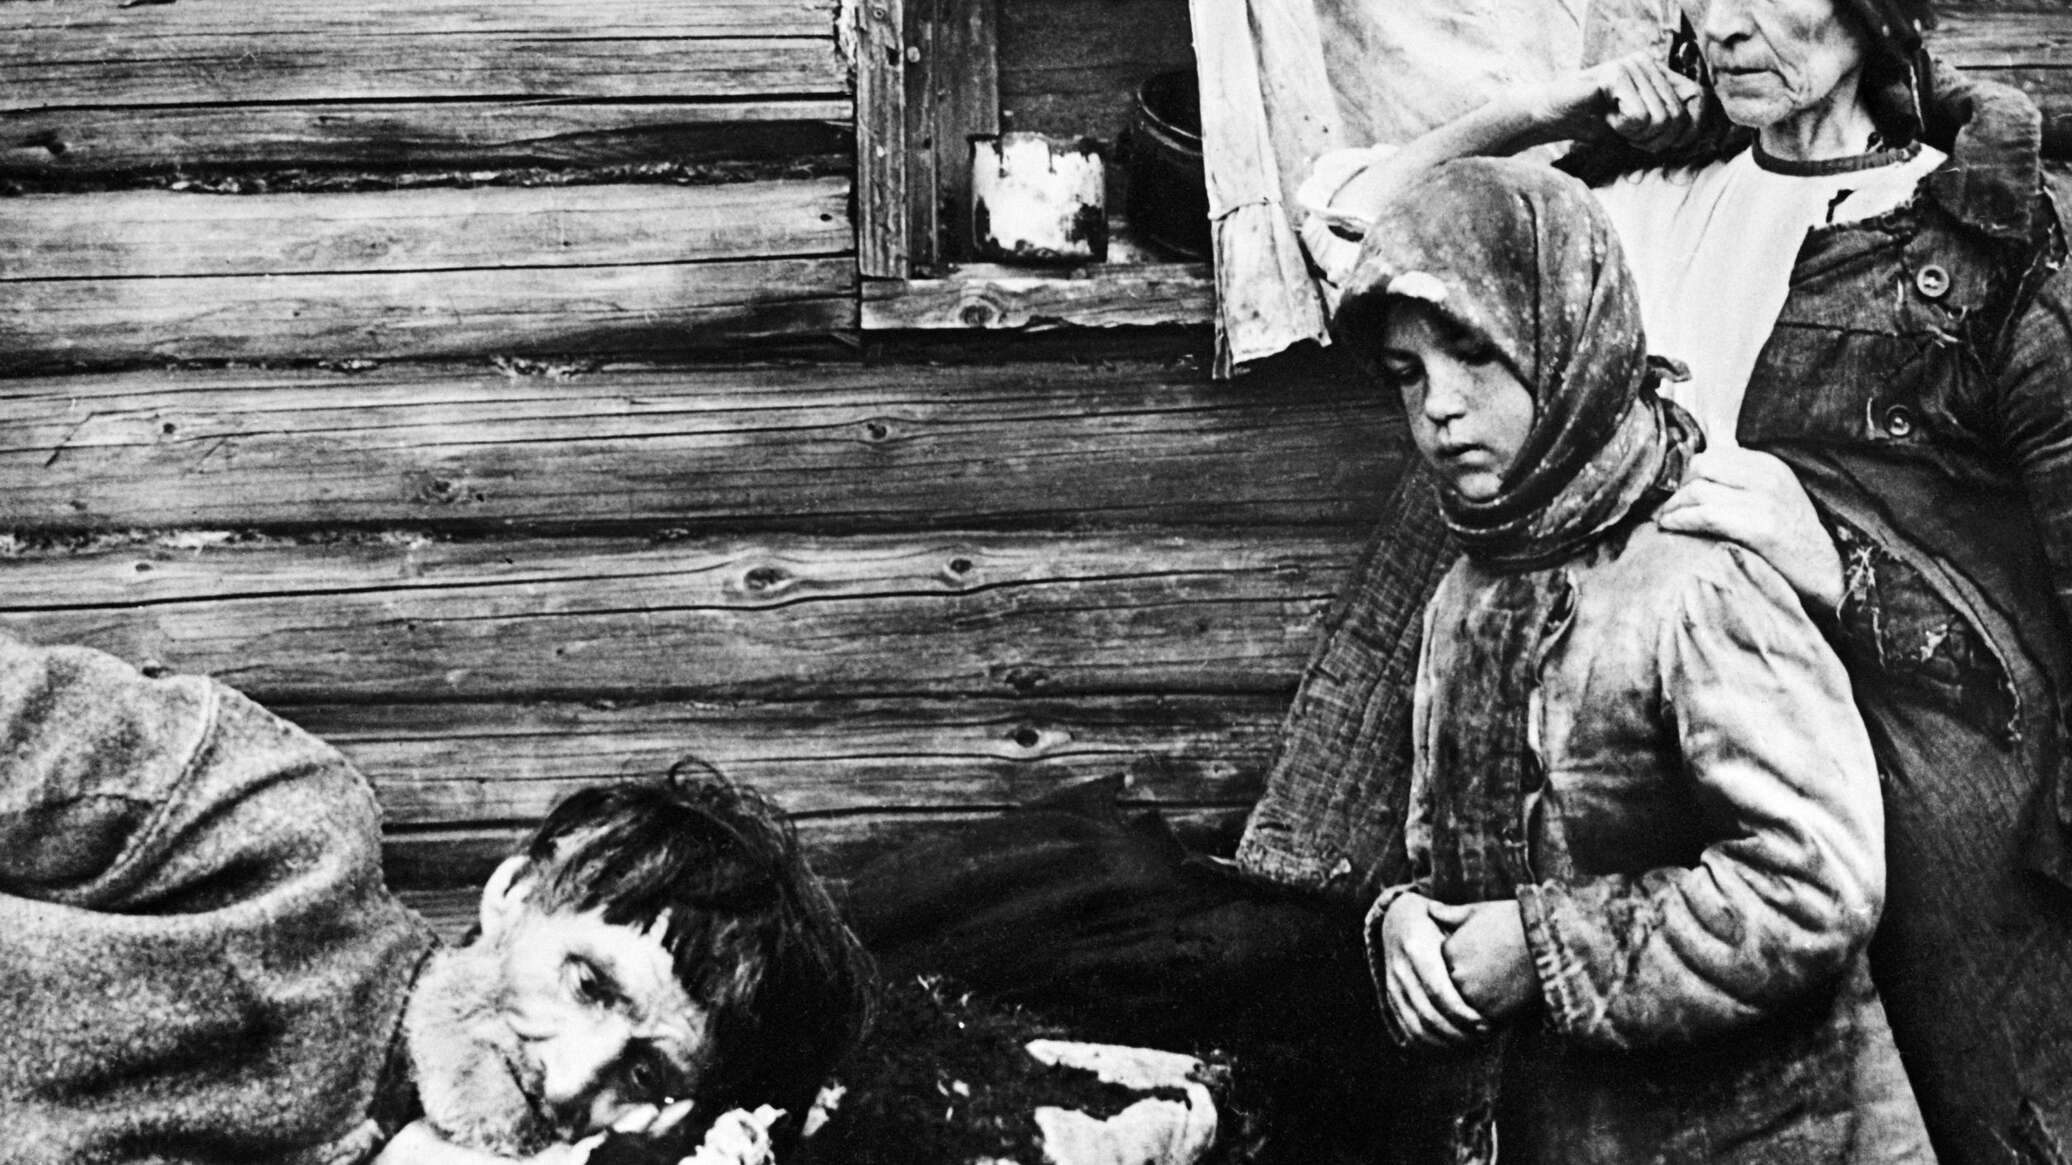 Массовый голод 1932